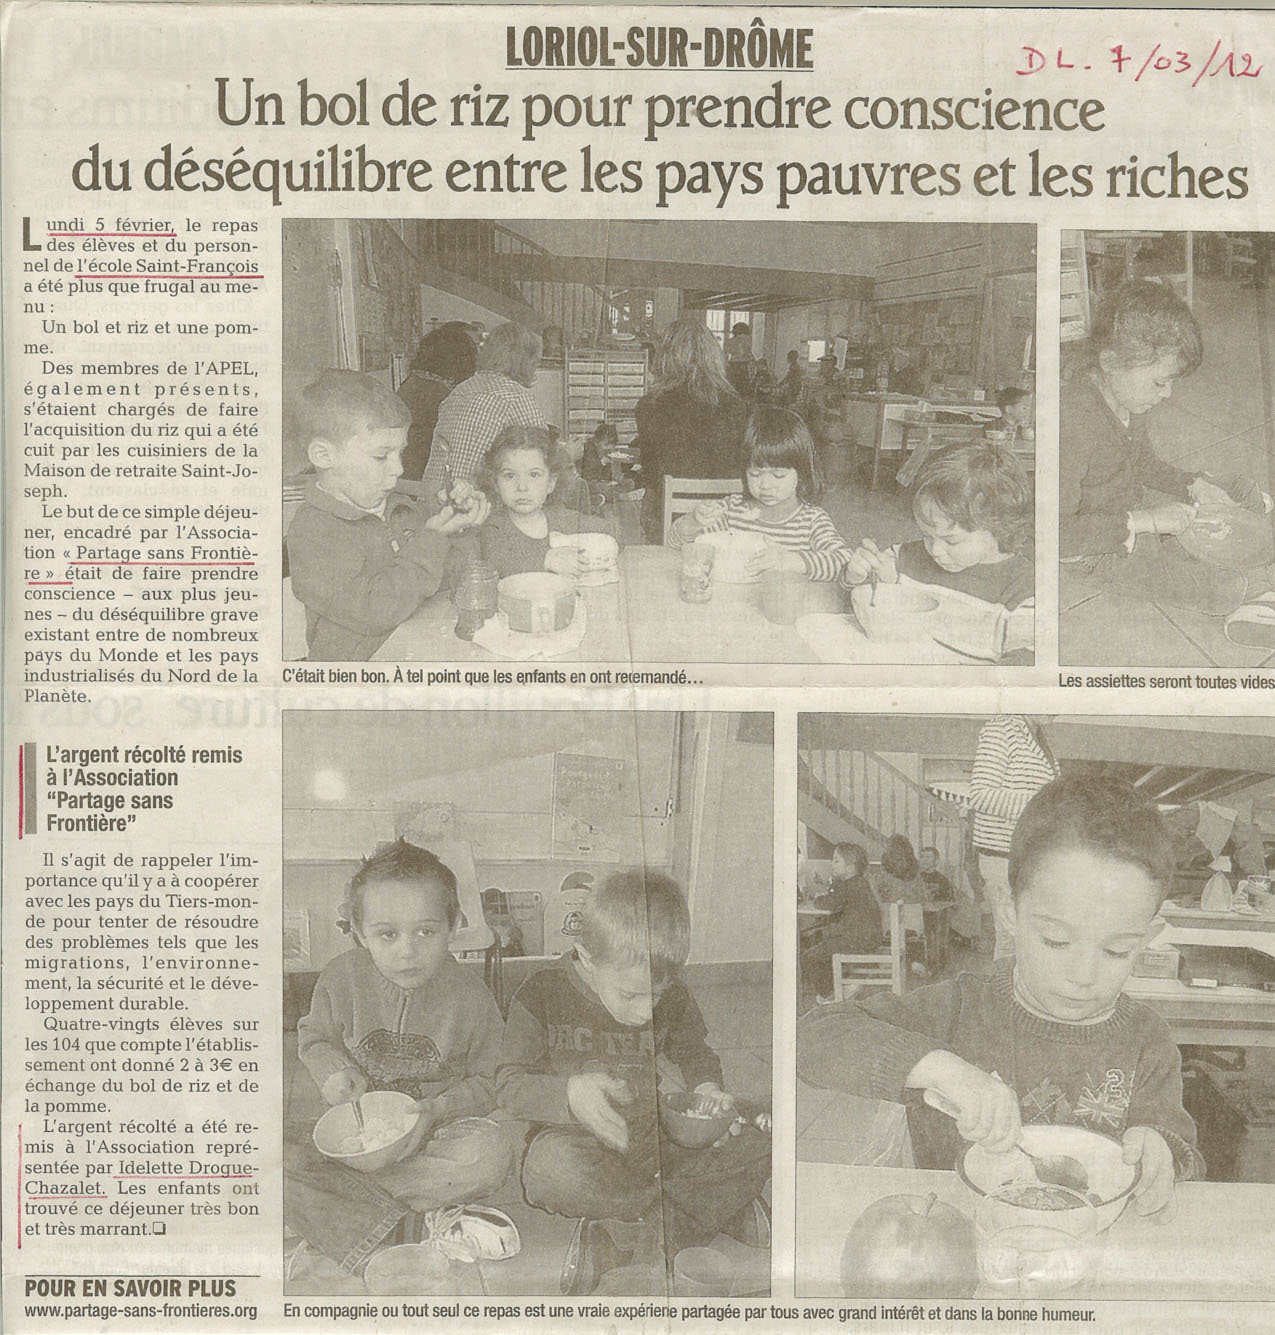 Intervention d'Idelette-Drogue Chazalet dans le cadre du bol de riz de l'école Saint-François de Loriol sur Drôme, le 06 mars 2012, la presse en parle.